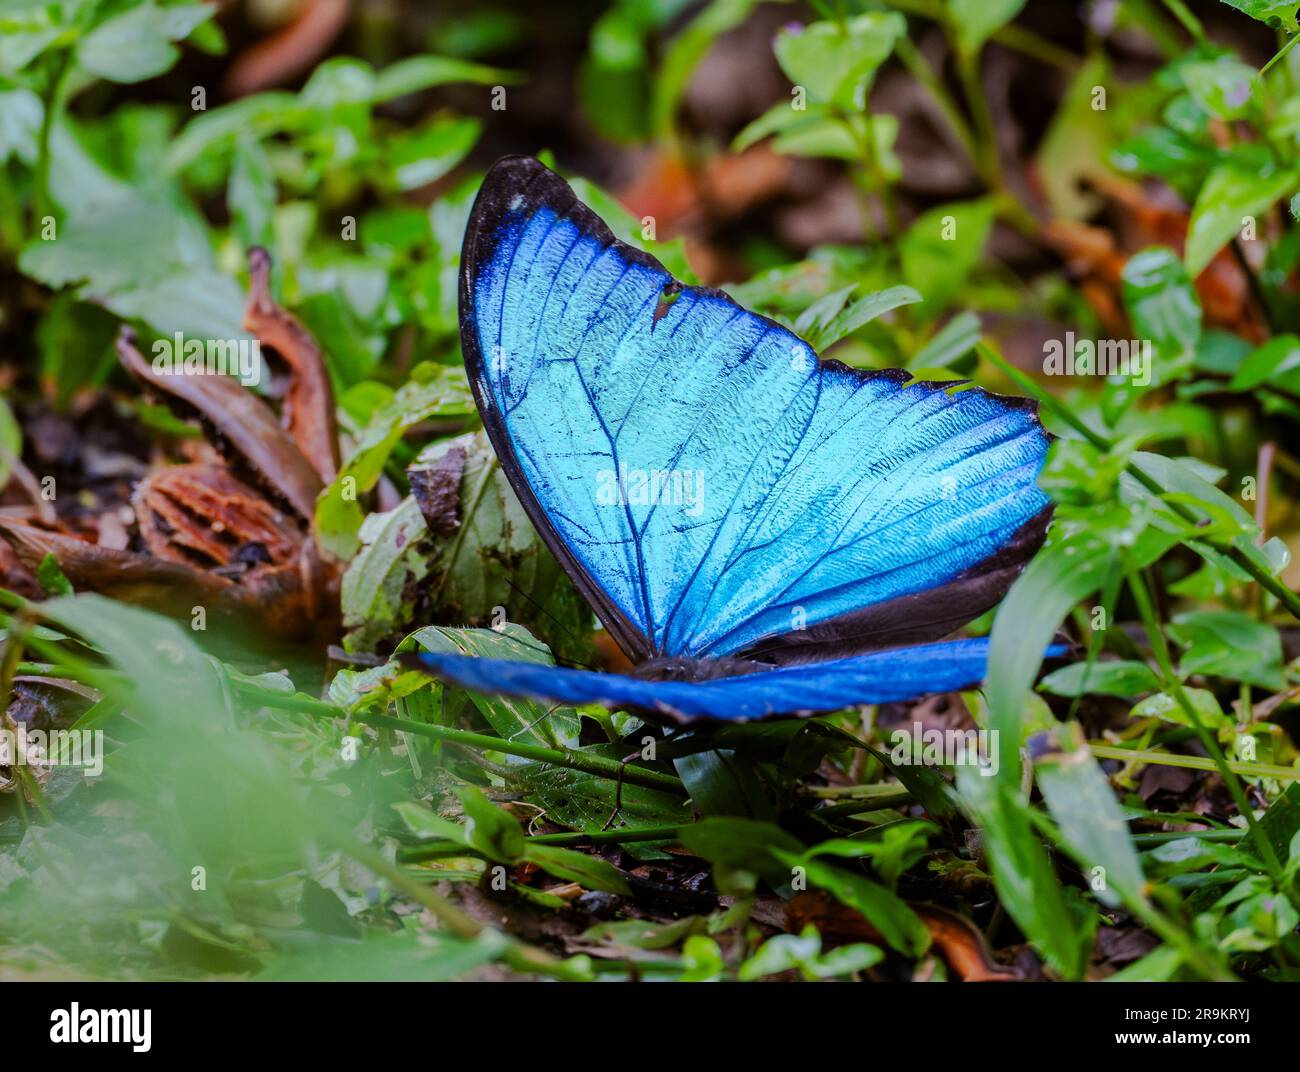 Ein blauer Morpho-Schmetterling (Morpho menelaus) öffnet seine leuchtend blauen Flügel. Kolumbien, Südamerika. Stockfoto